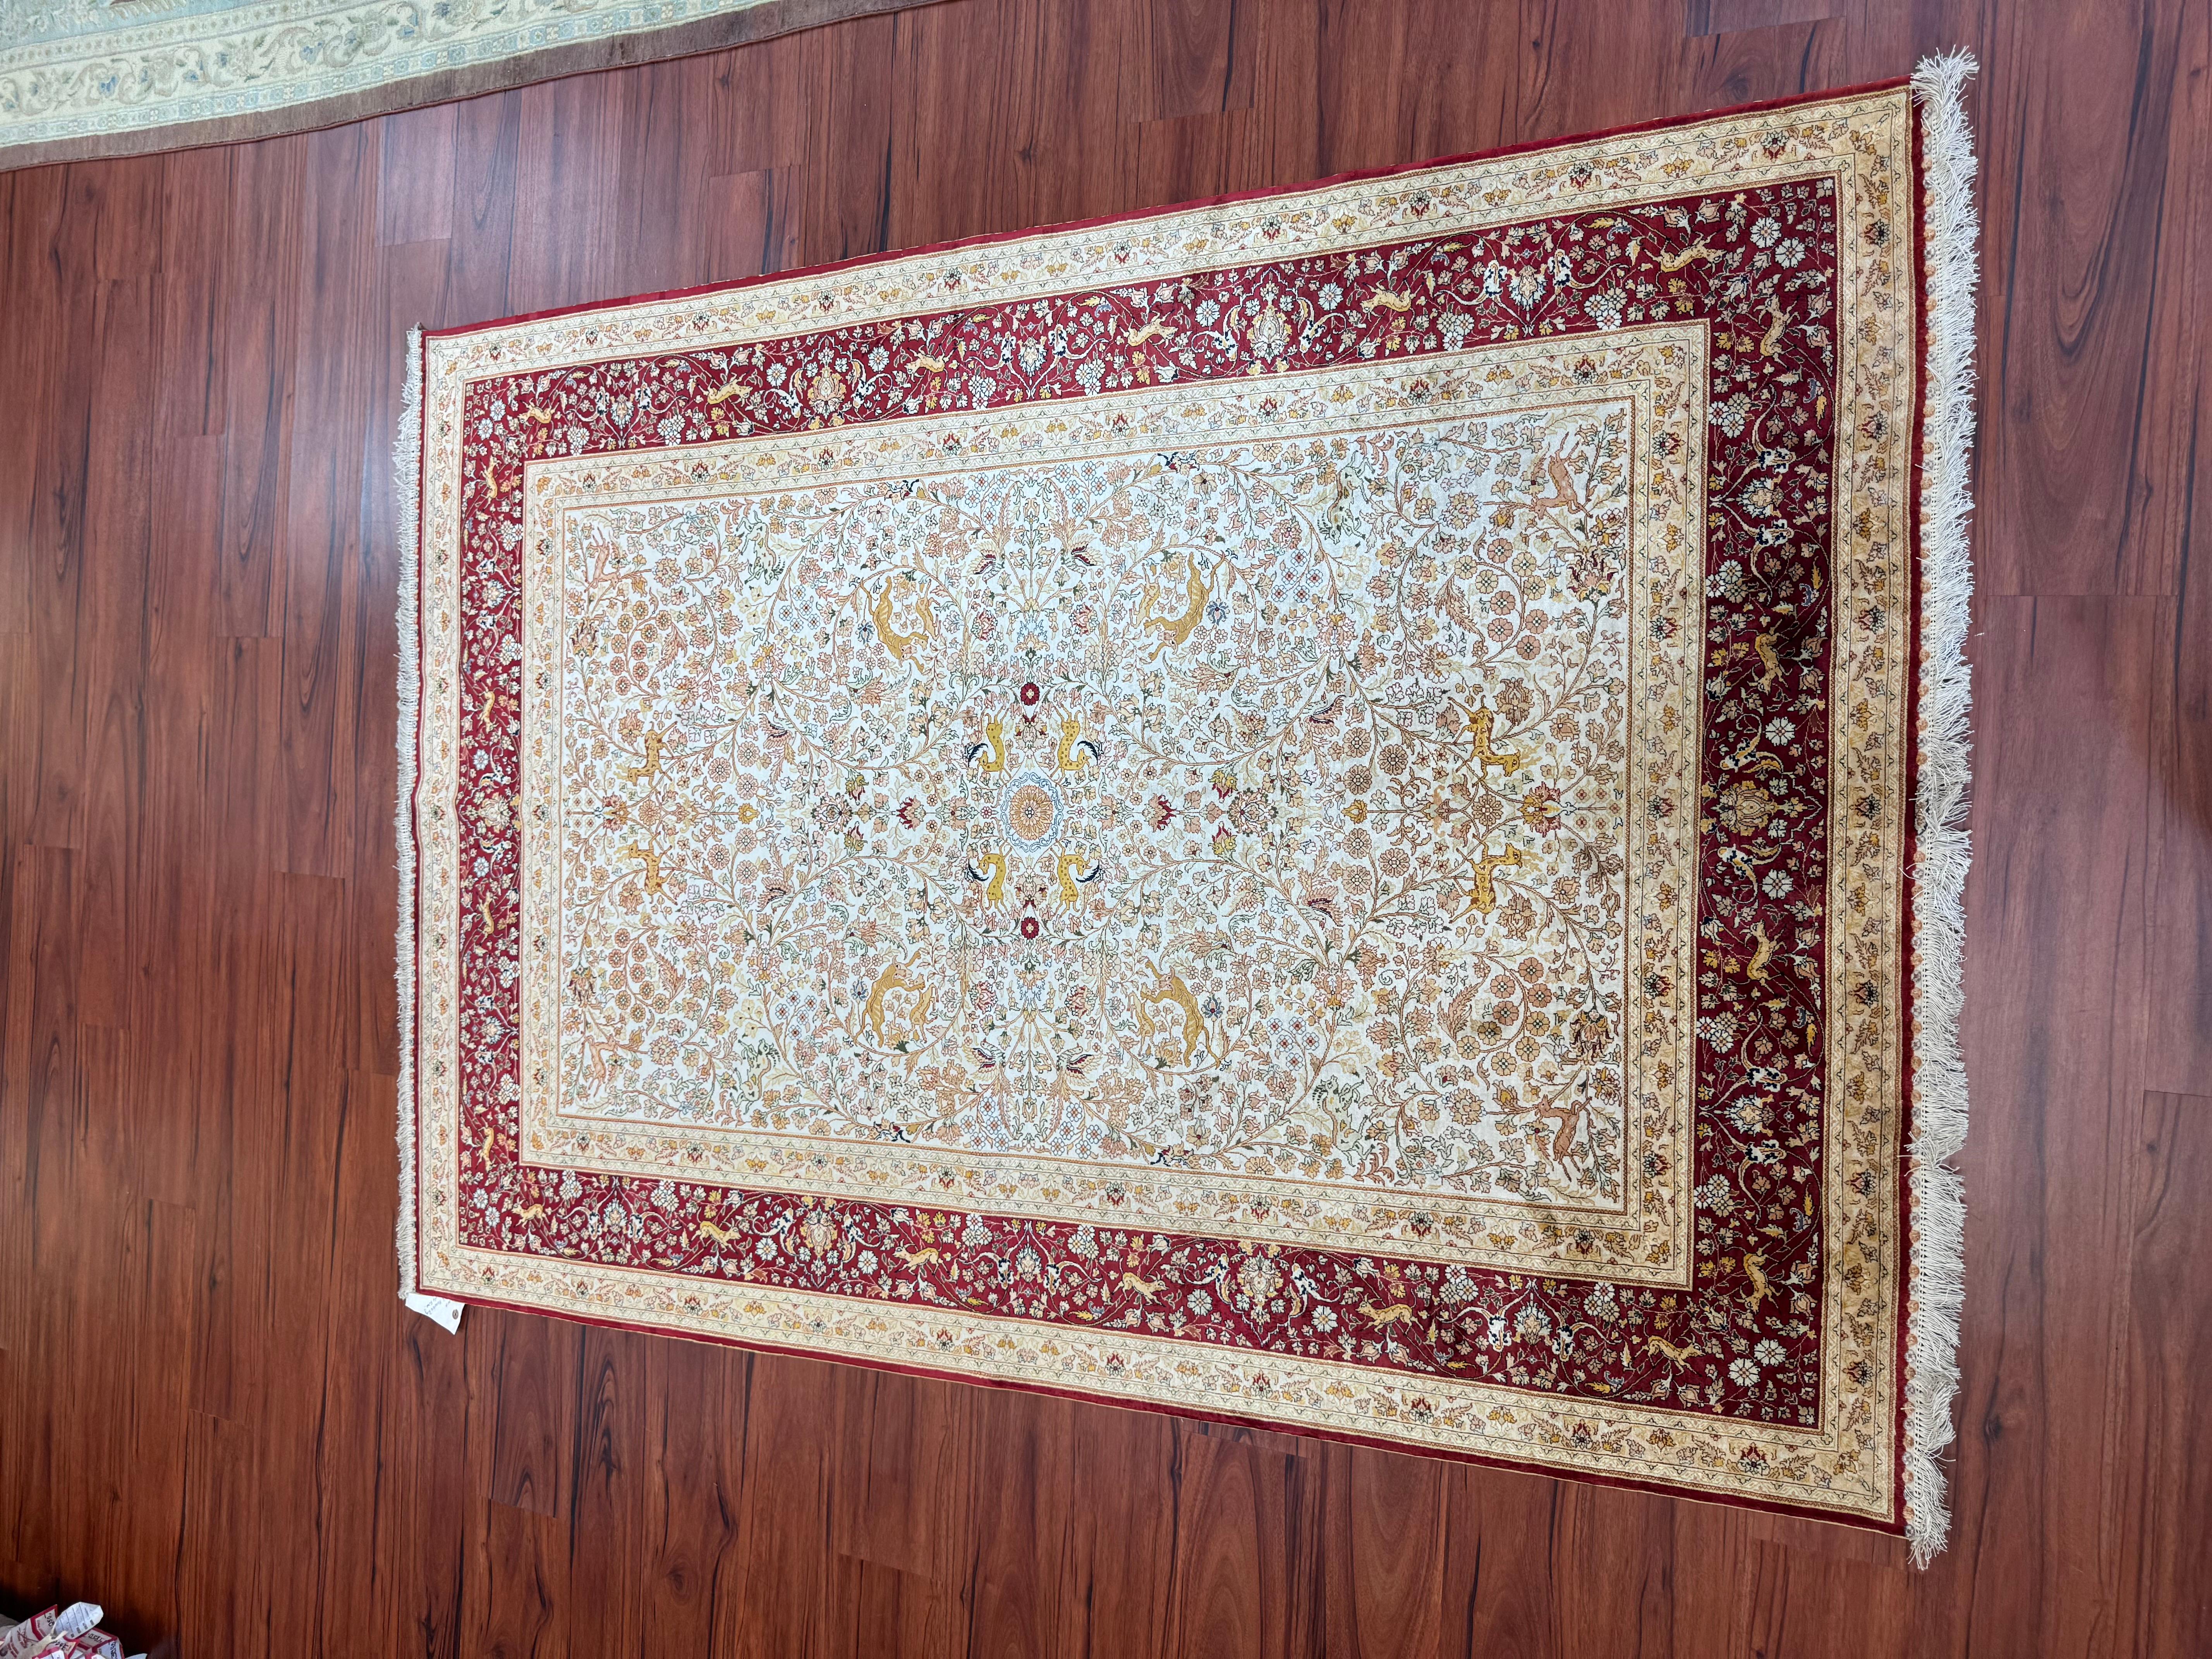 Un superbe tapis turc Hereke d'une extrême finesse, originaire de Turquie à la fin du 20e siècle. Ce tapis est en excellent état et est vraiment magnifique. Il est fabriqué à partir de 100 % de soie et présente une magnifique combinaison de couleurs